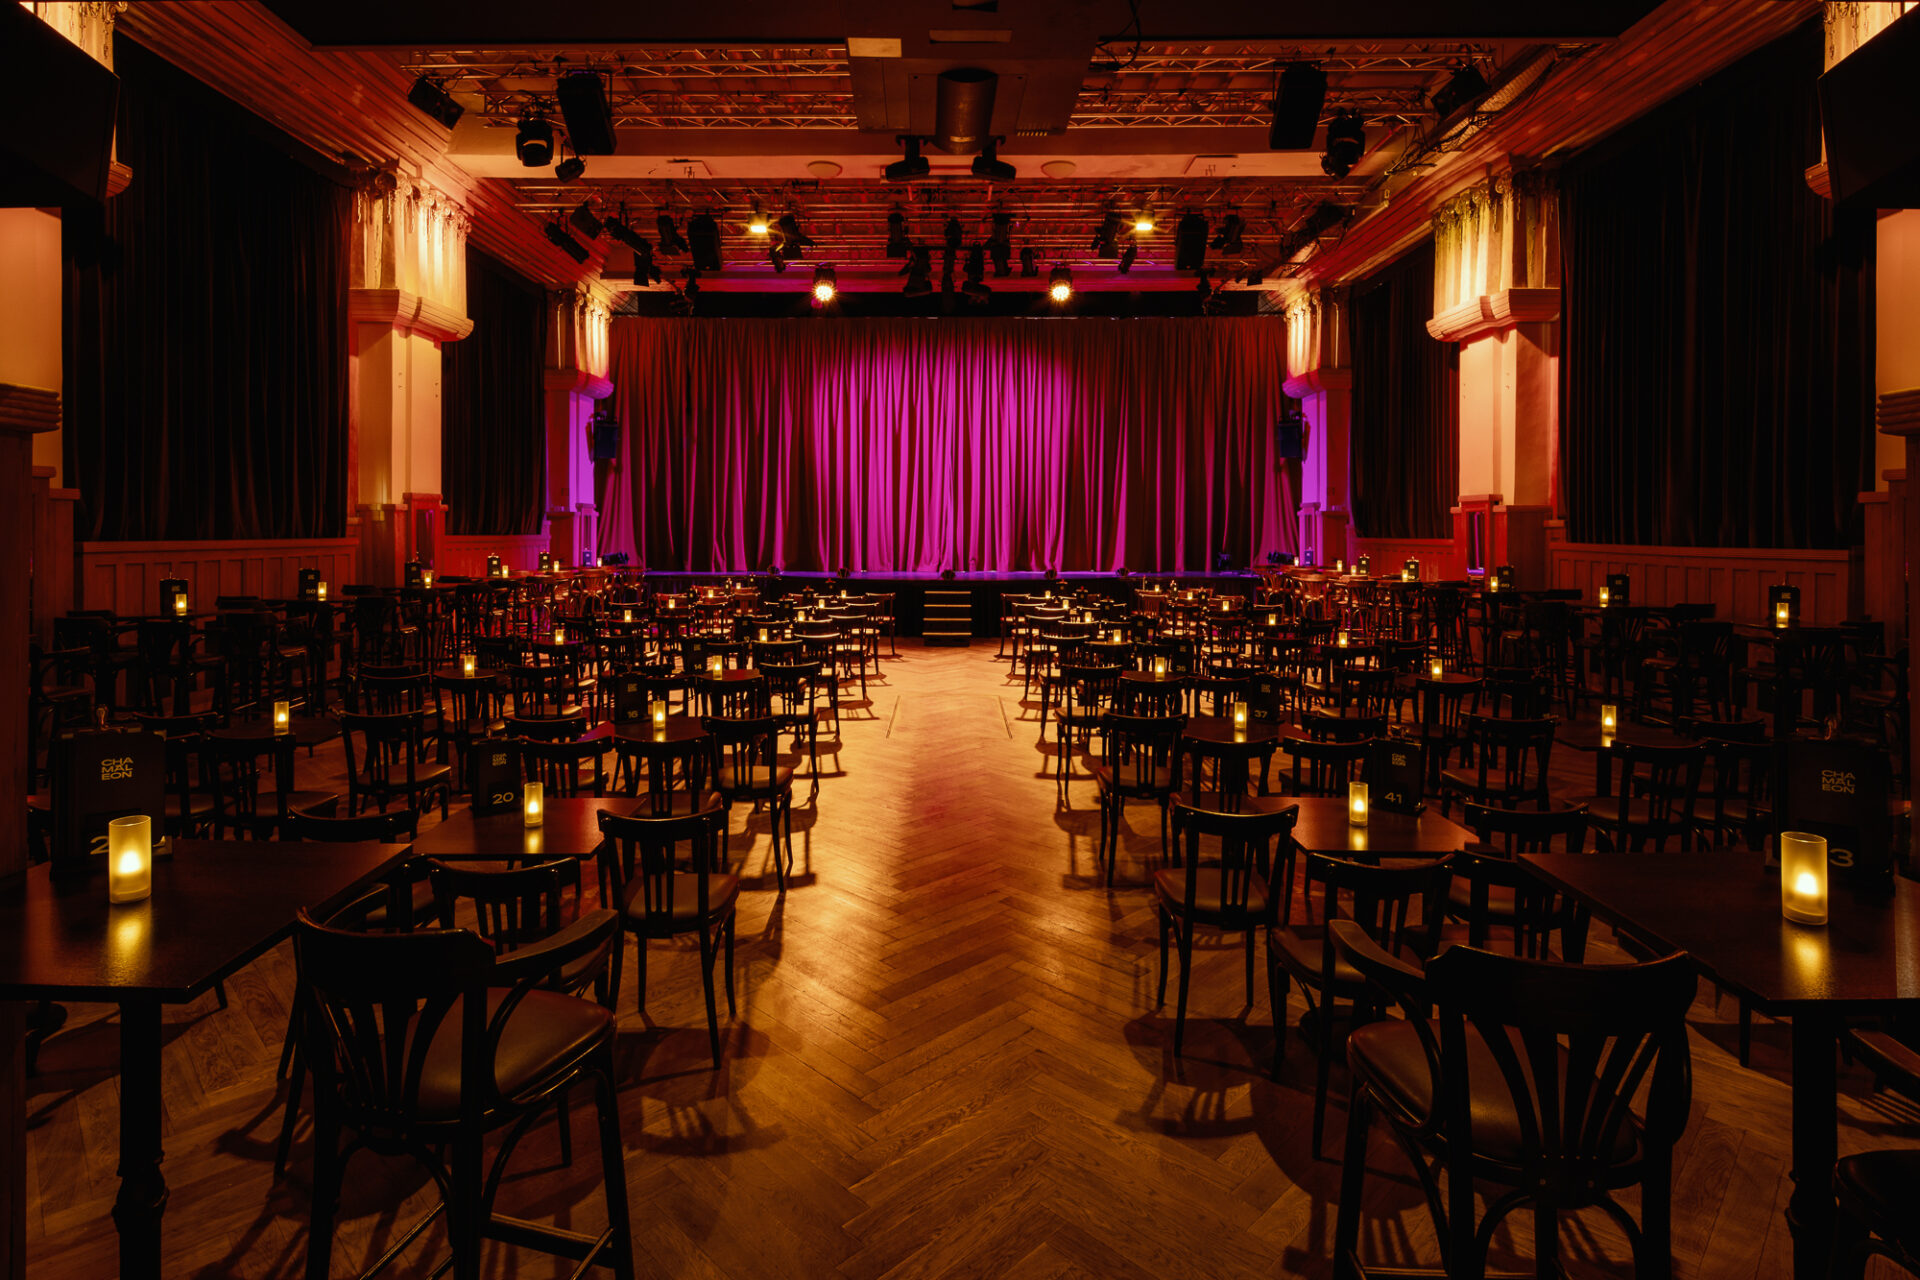 Leerer Theatersaal im Chamäleon Theater Berlin mit stimmungsvoller Beleuchtung